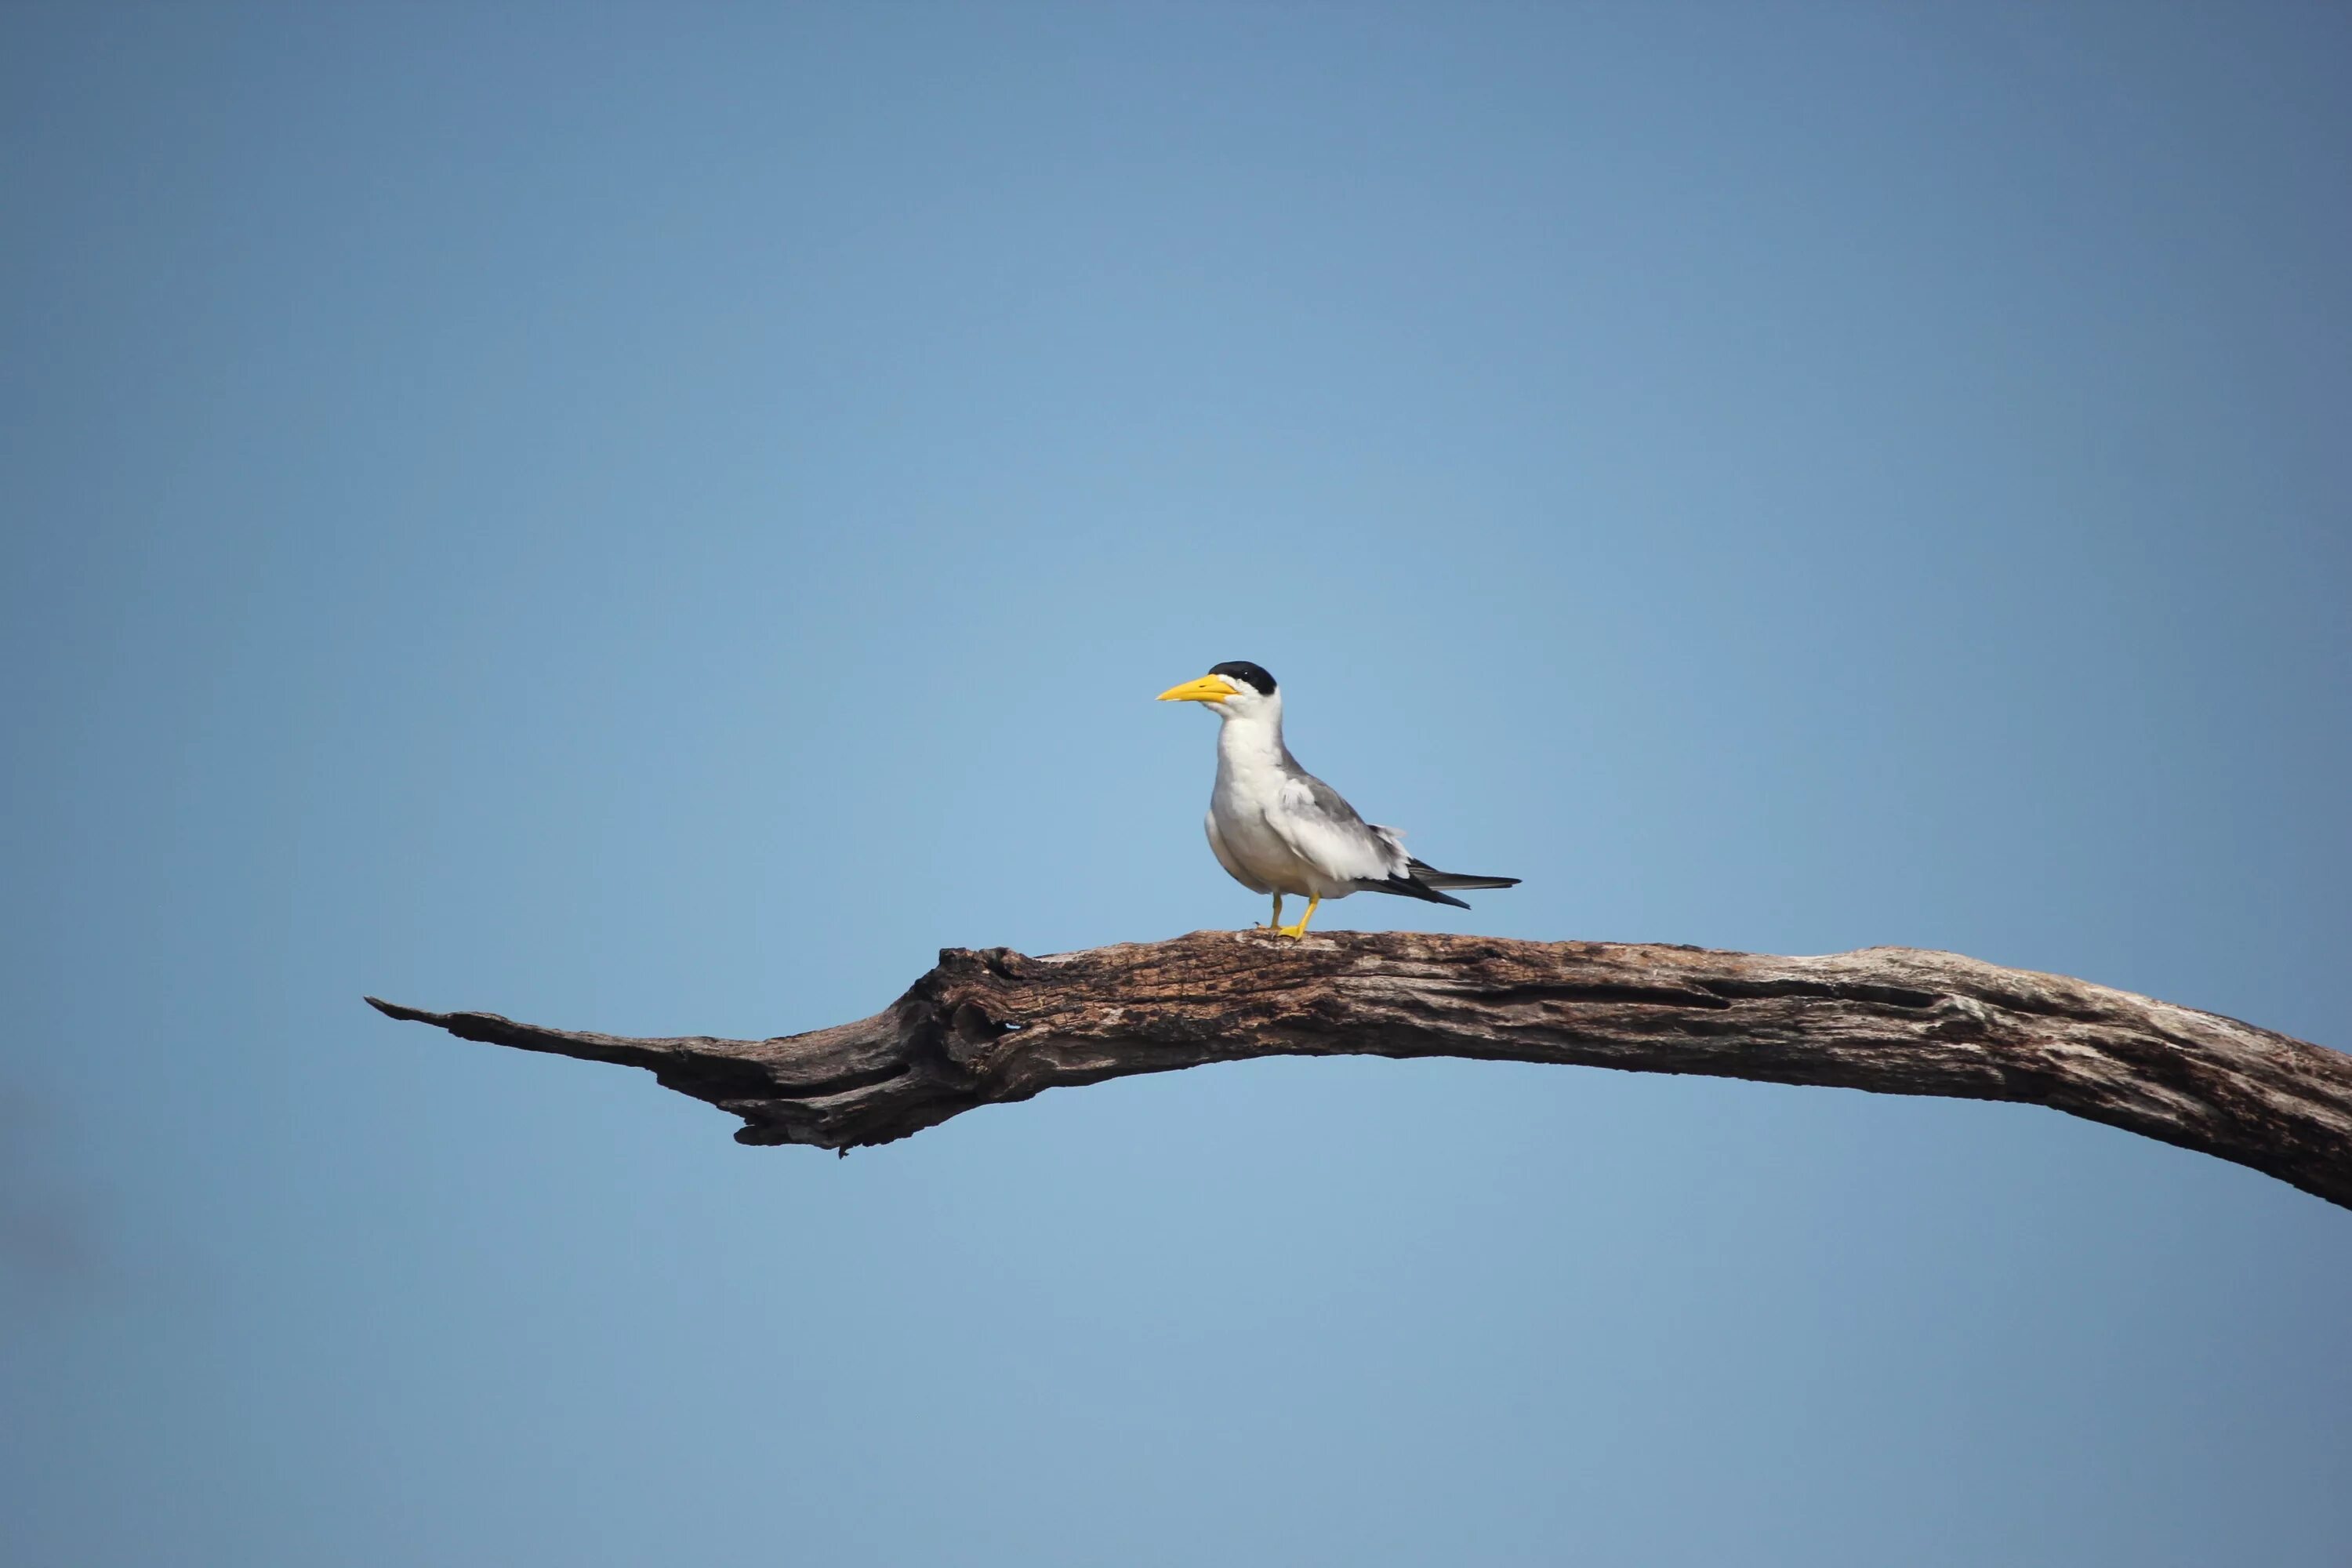 Птицы пр т. Pixabay птица на ветке. Птица на ветке на фоне синего неба. Птица на ветке вниз головой. Животный мир Чили.